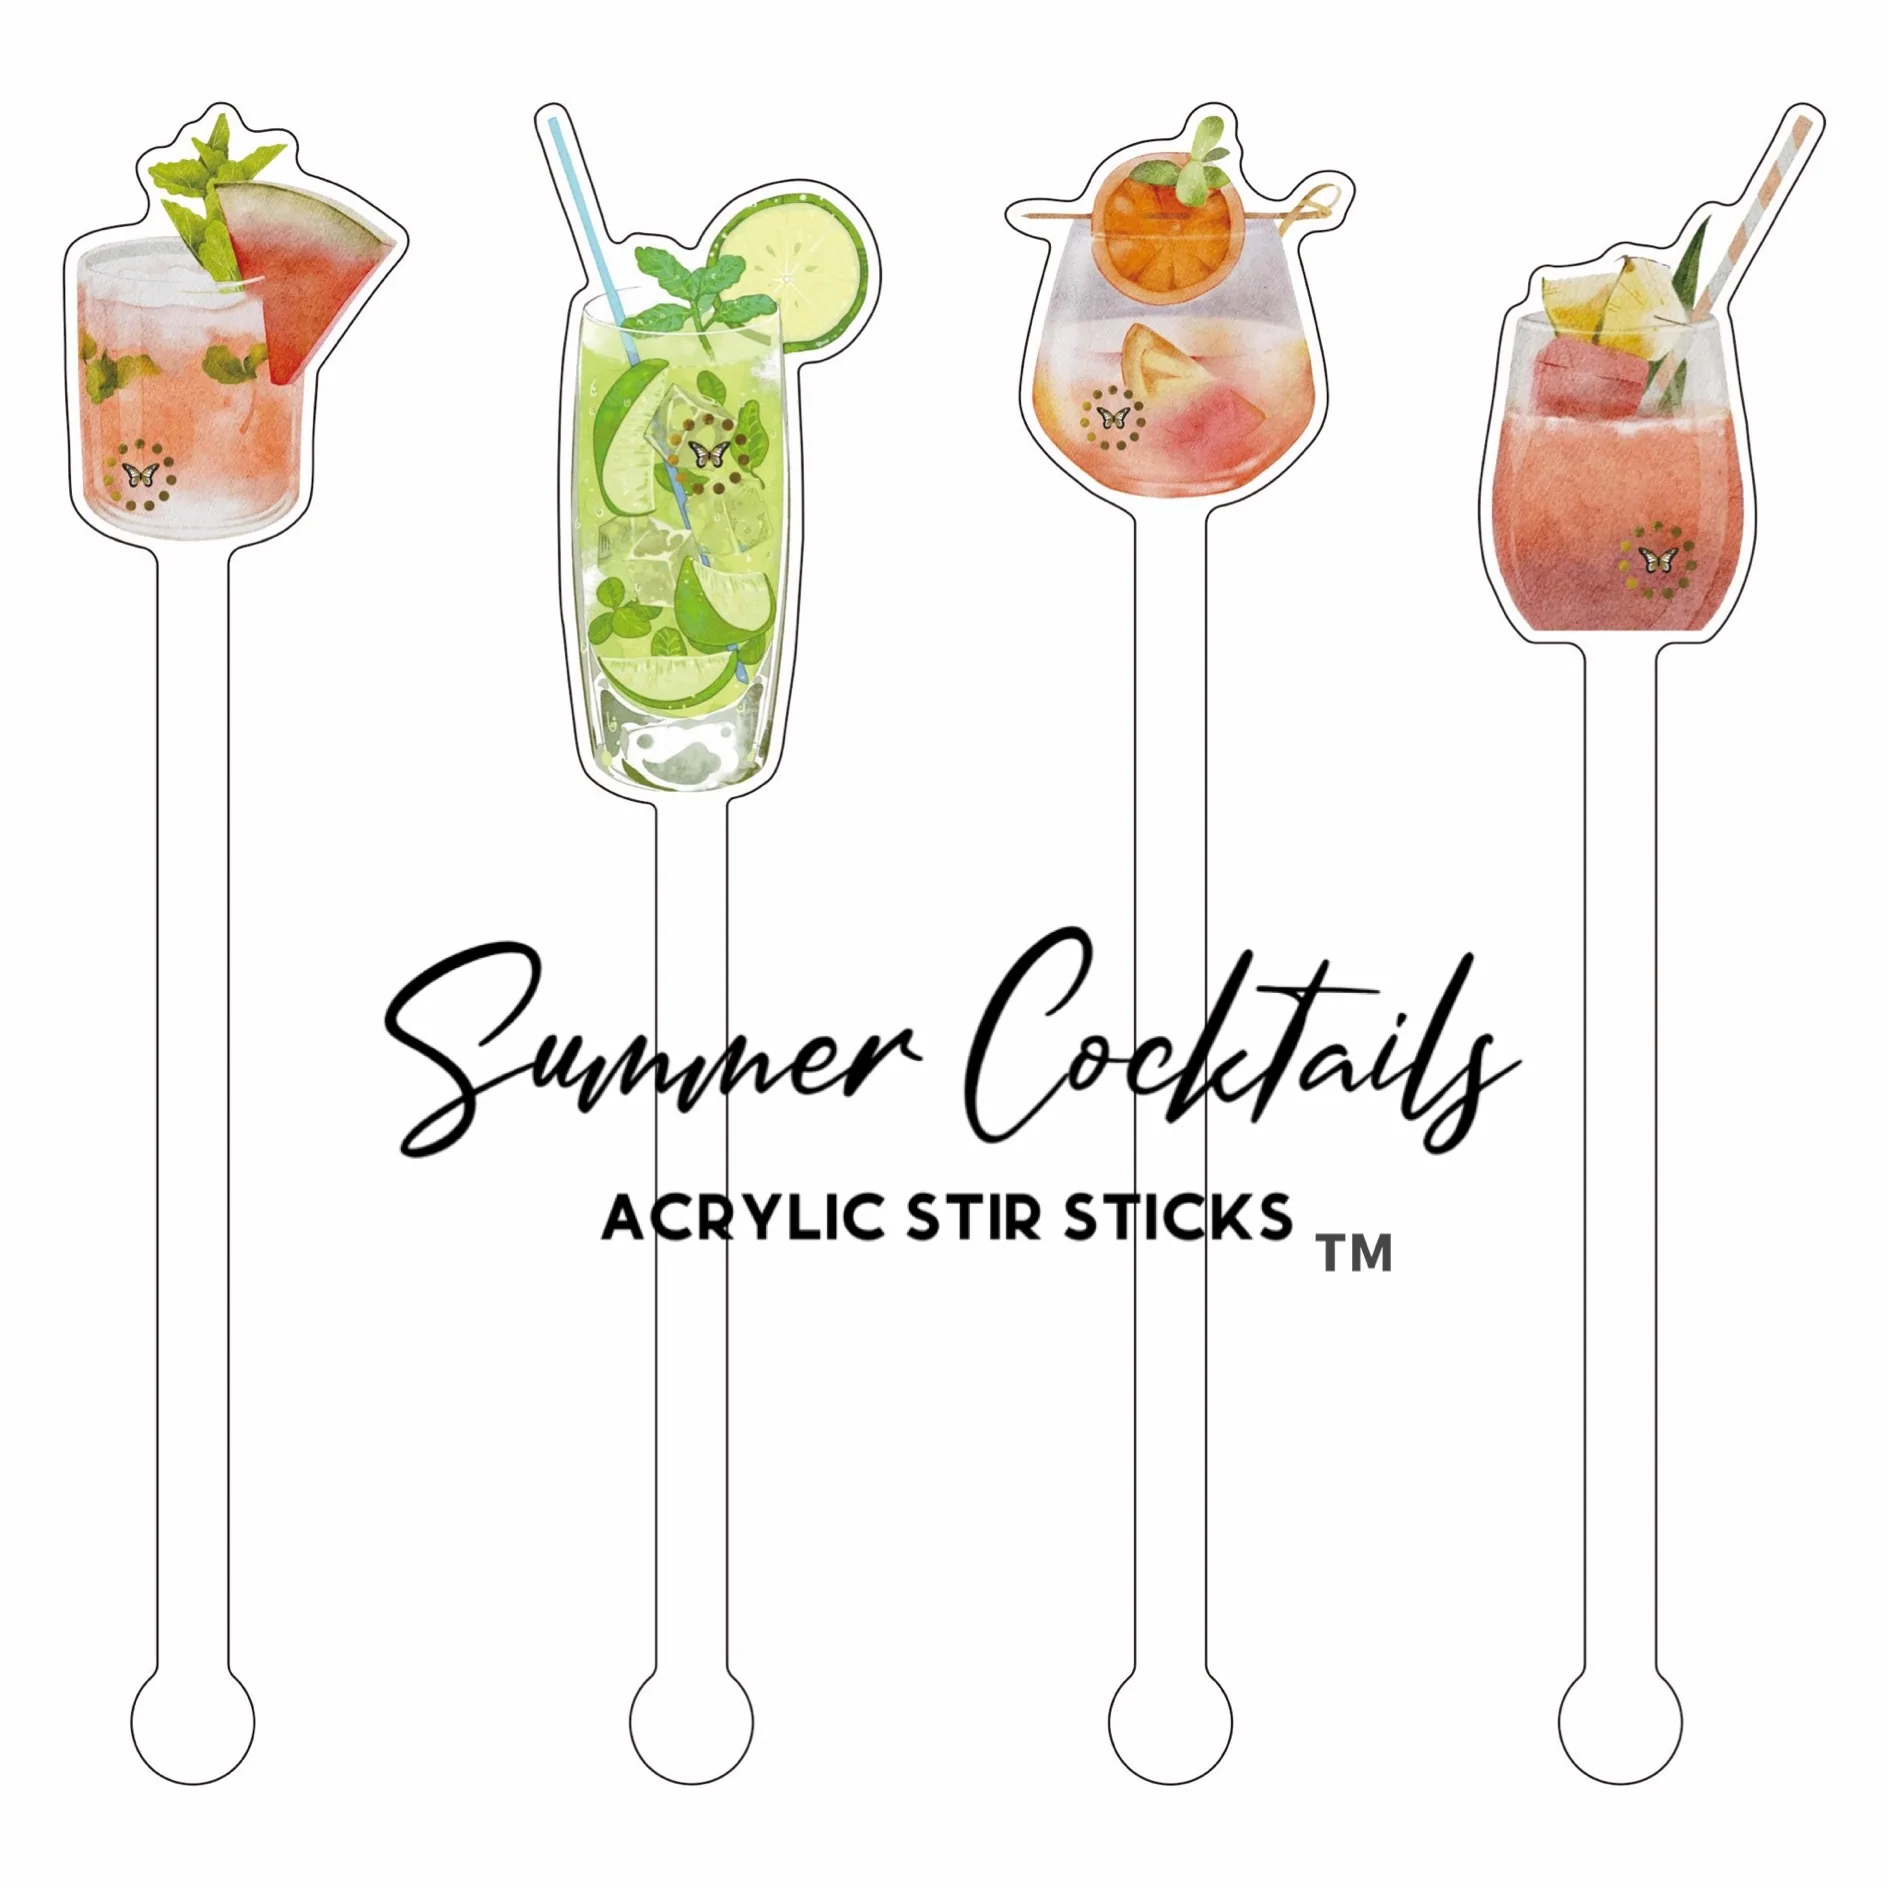 https://mydrinkbomb.com/wp-content/uploads/2022/08/stir-sticks-summer-cocktails.webp